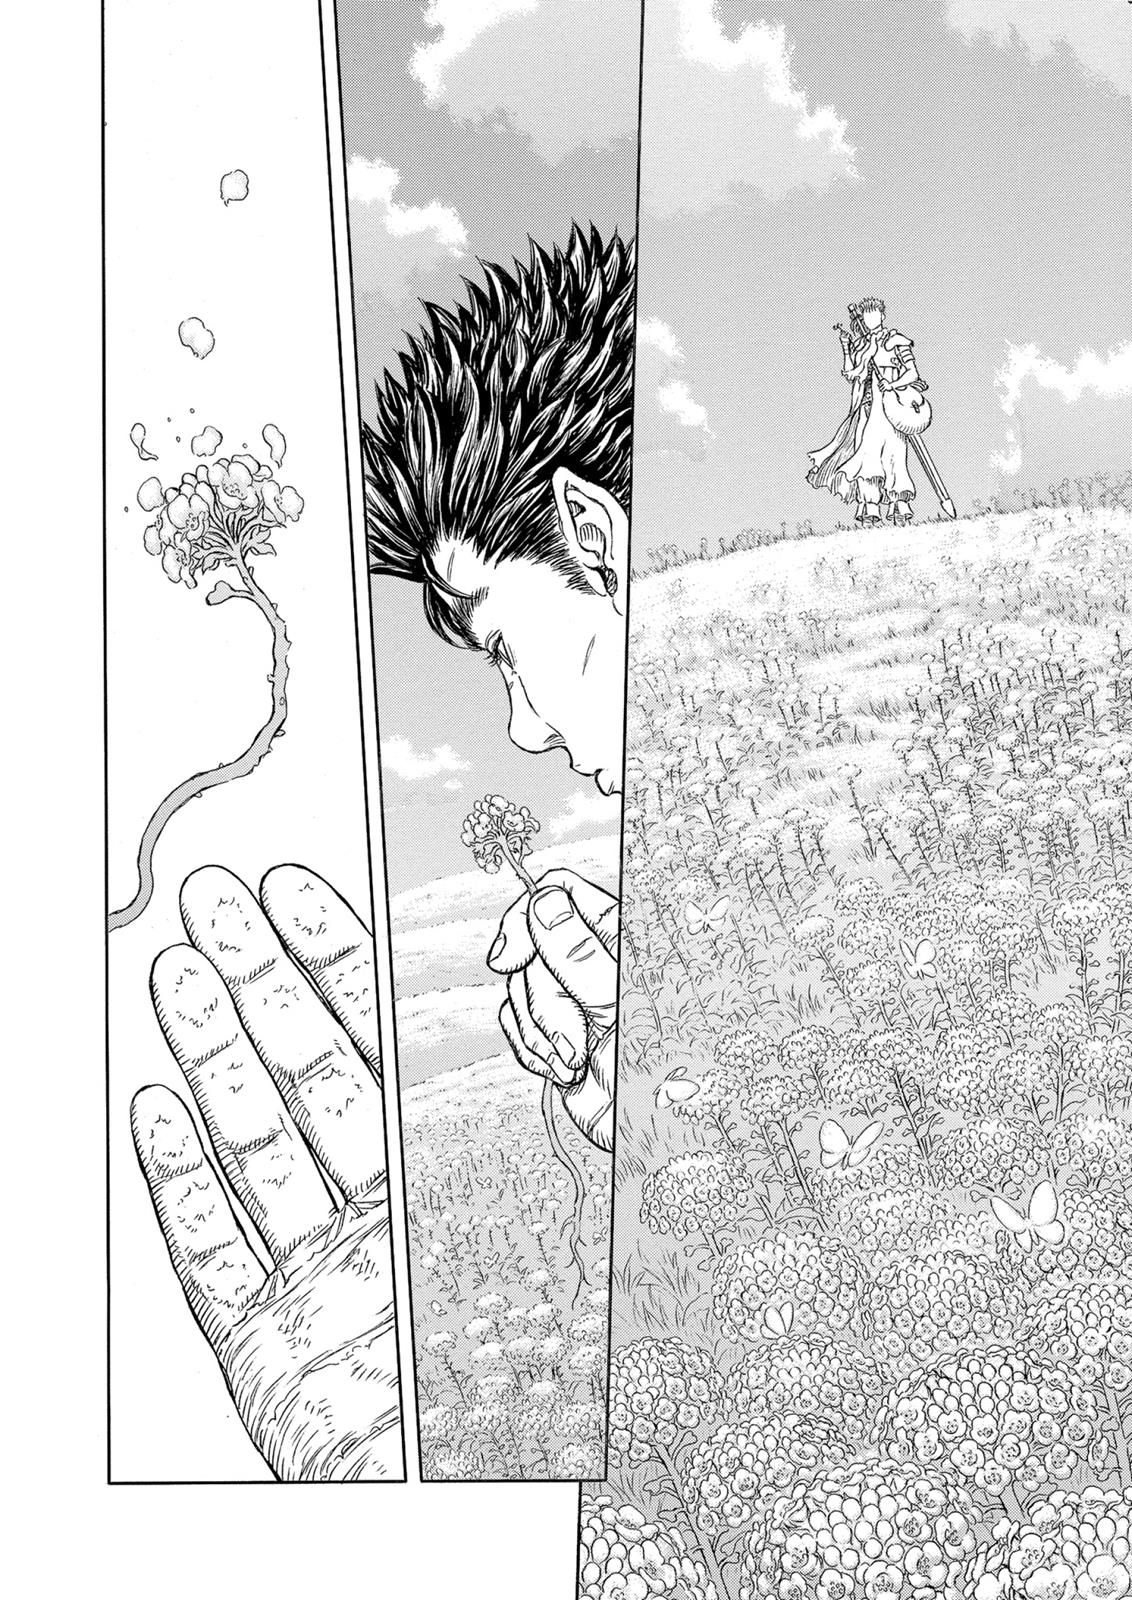 Berserk Manga Chapter 331 image 22